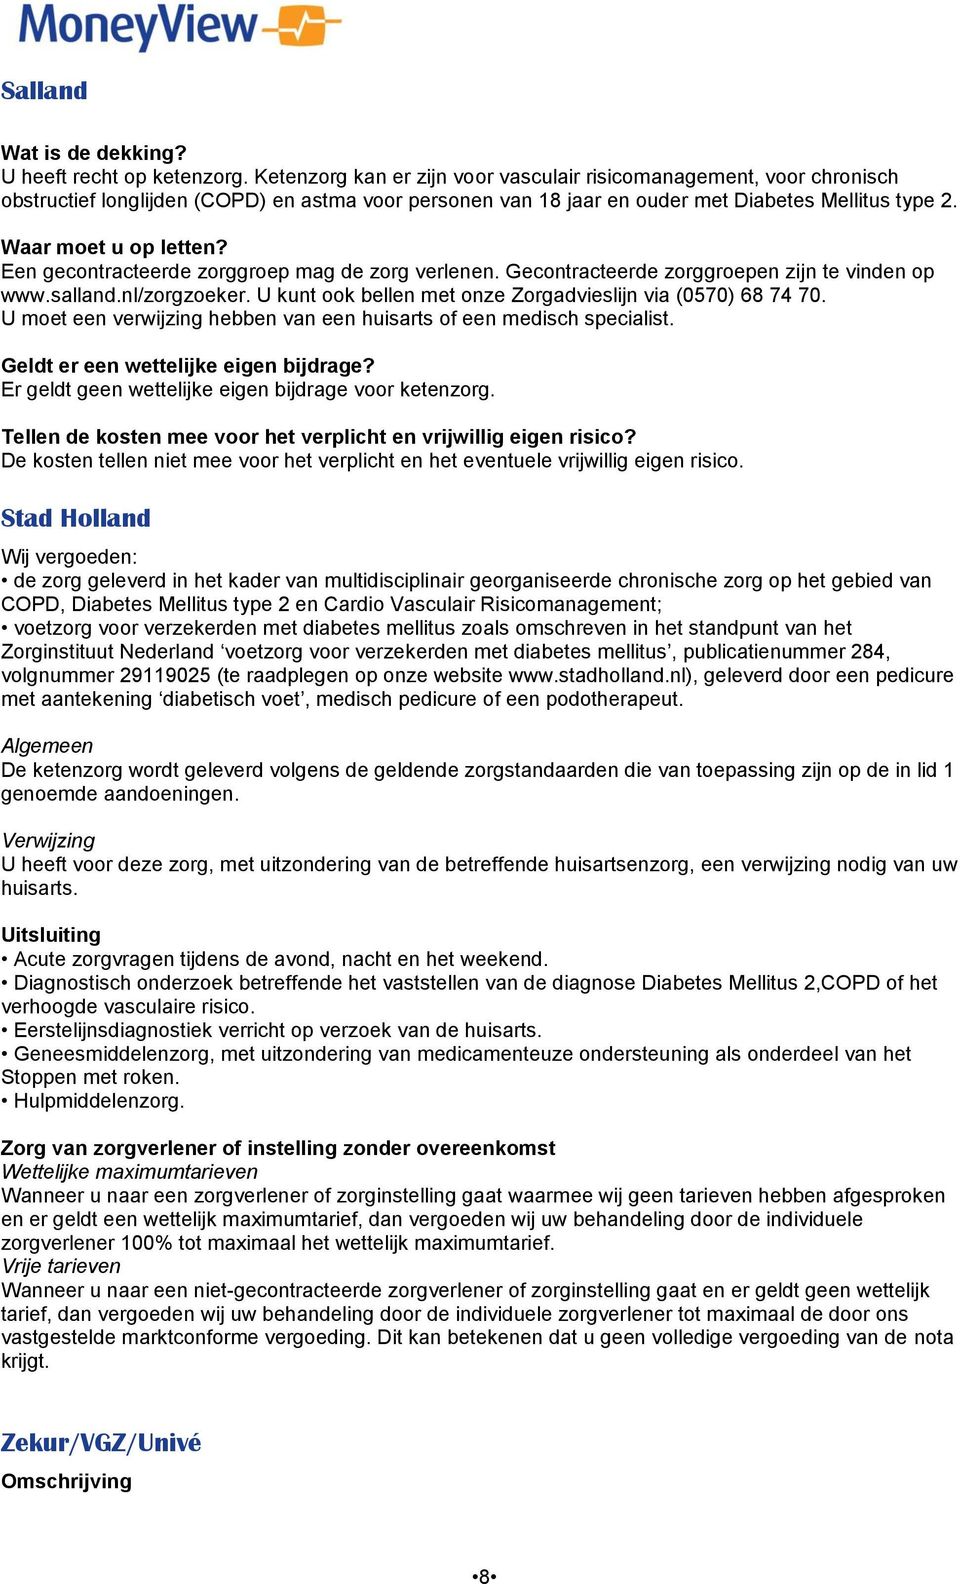 Een gecontracteerde zorggroep mag de zorg verlenen. Gecontracteerde zorggroepen zijn te vinden op www.salland.nl/zorgzoeker. U kunt ook bellen met onze Zorgadvieslijn via (0570) 68 74 70.